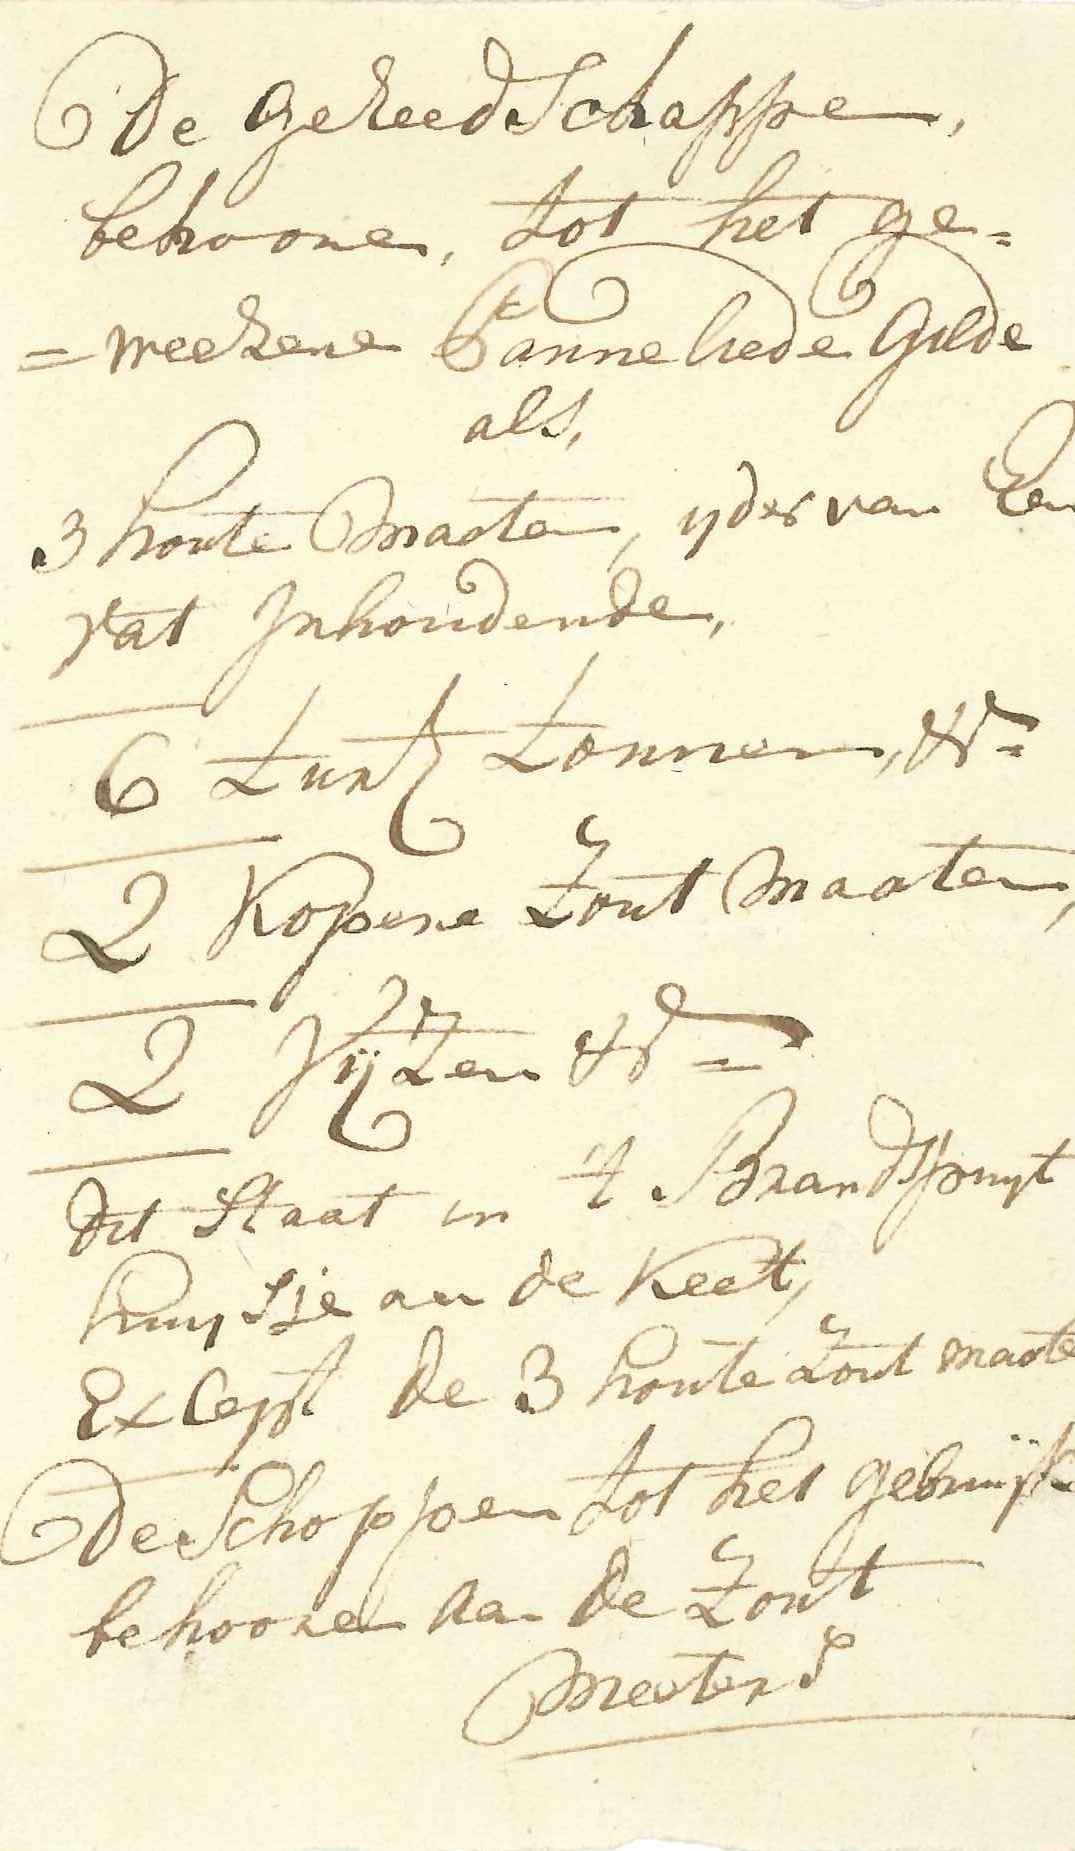 Inventaris van goederen van het panneliedengilde, ca. 1798.